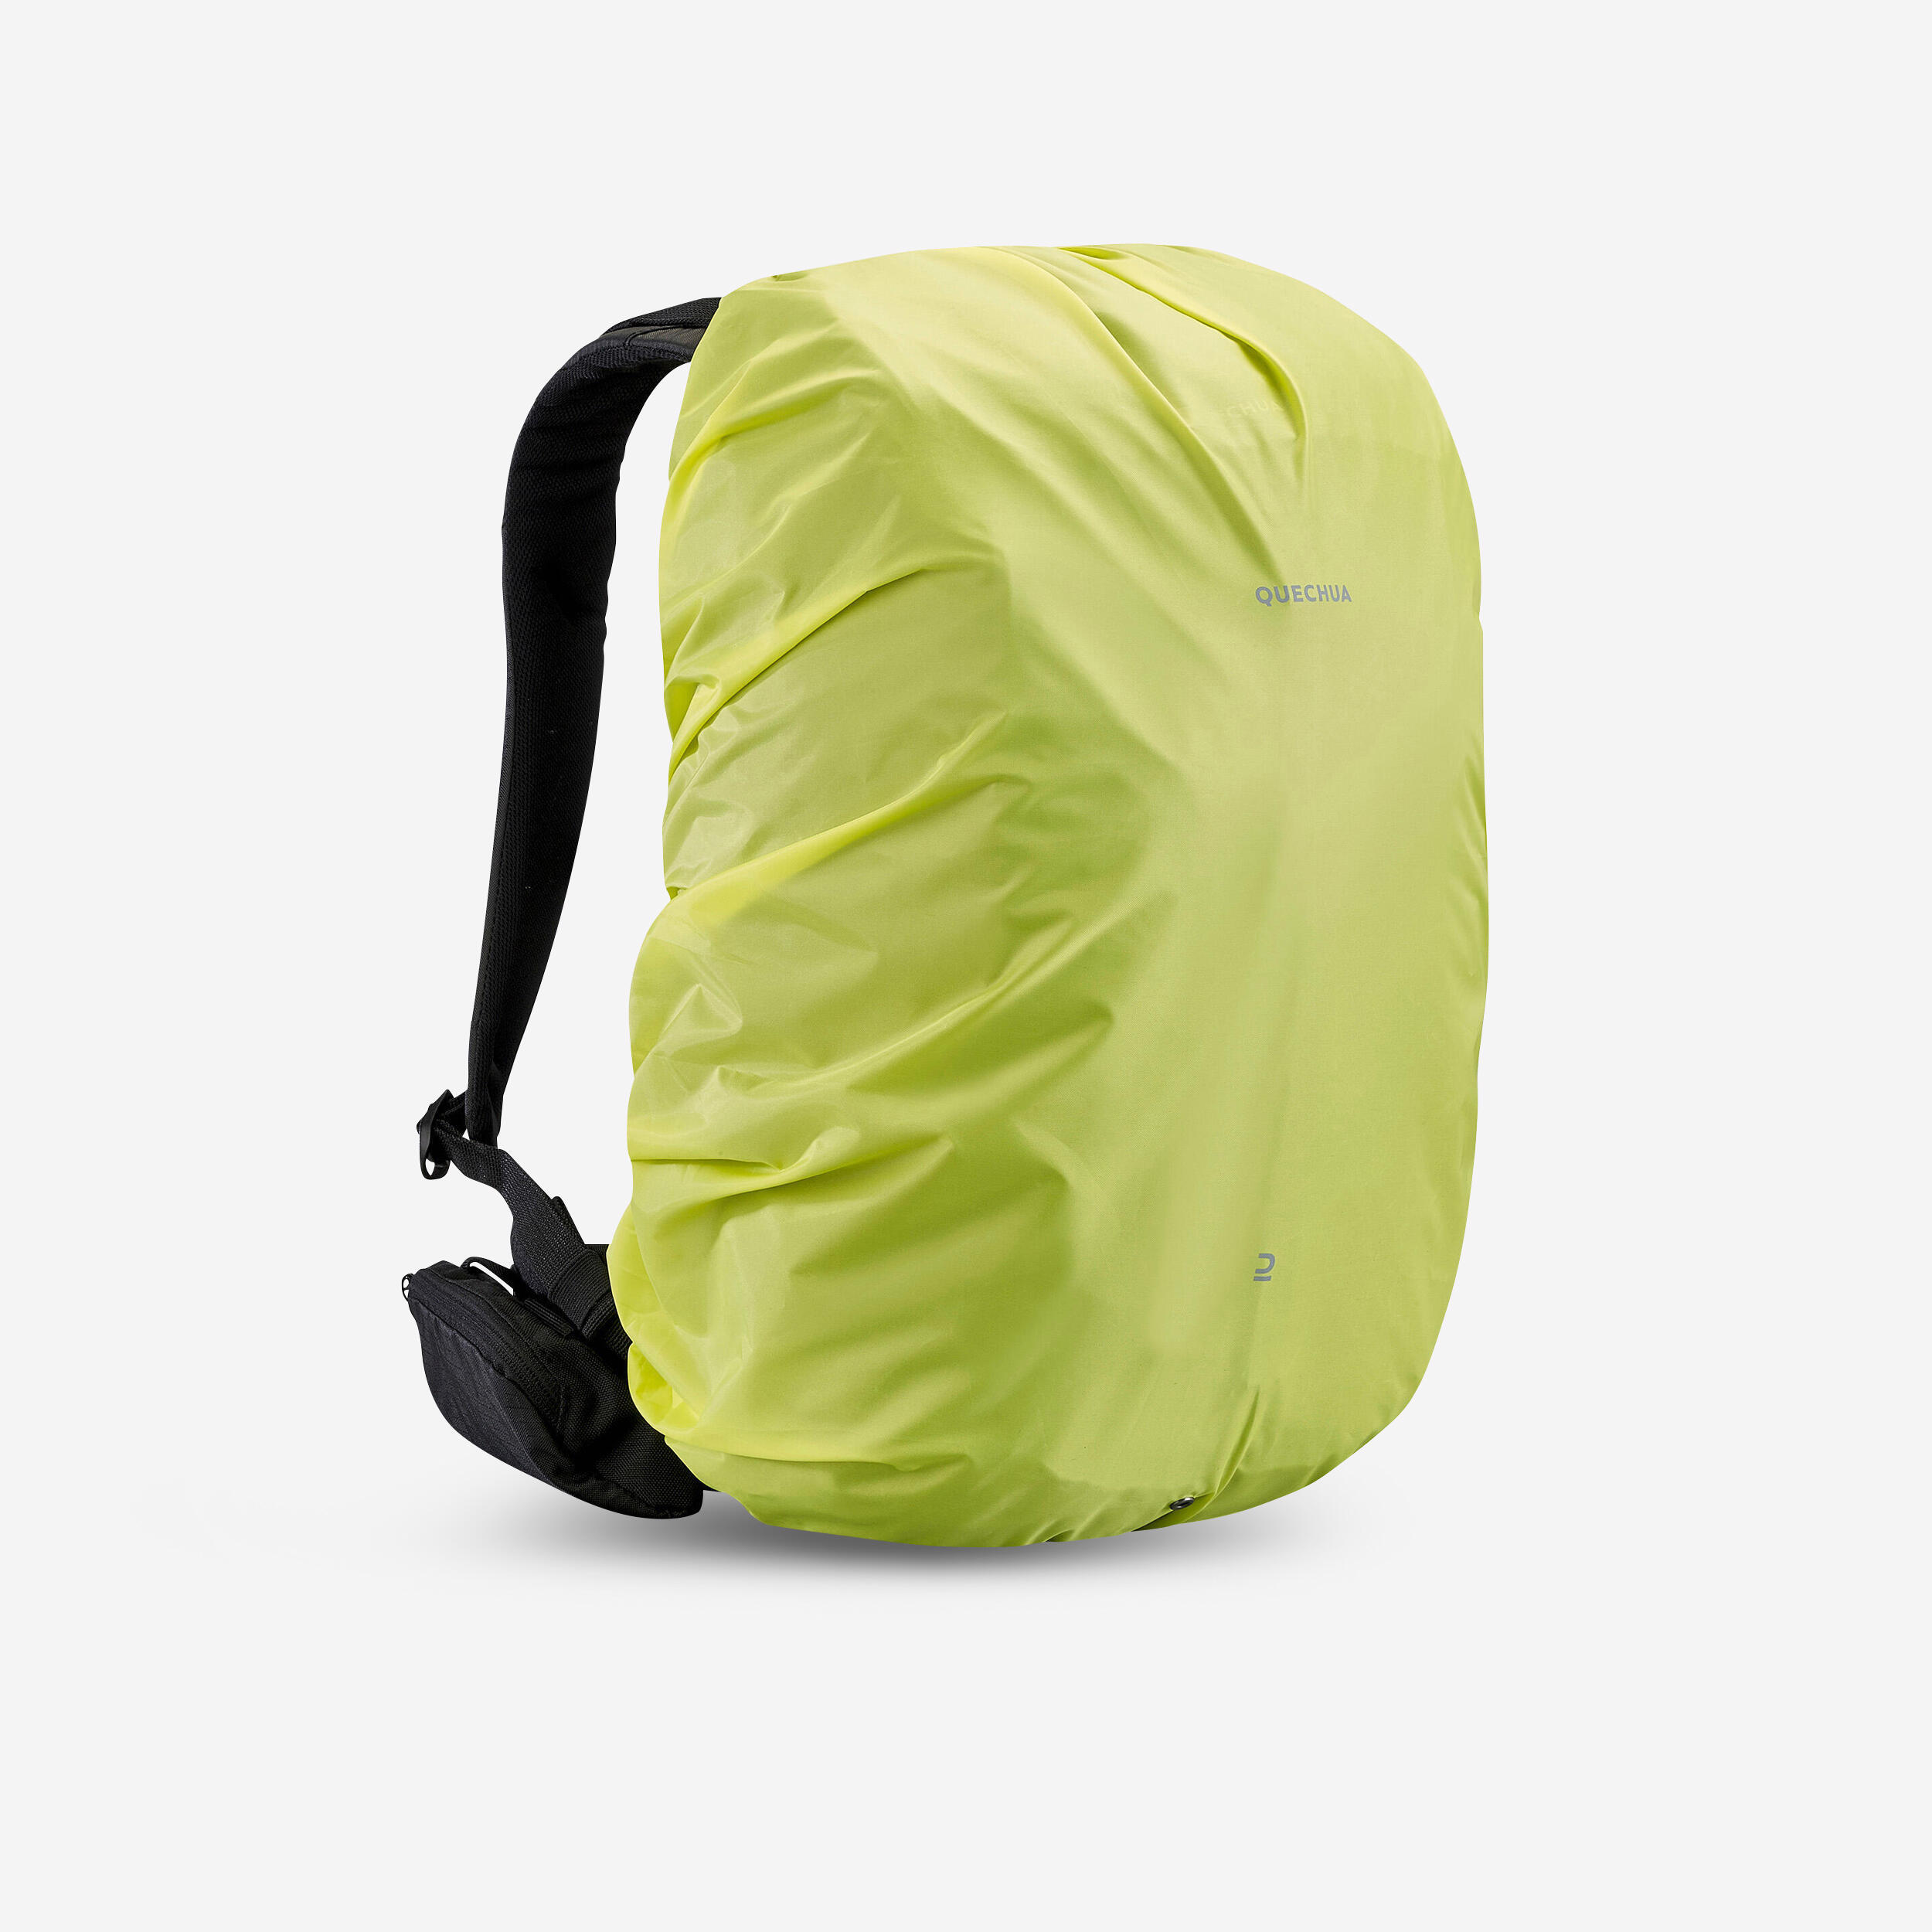 Buy Cycling Pannier Rack 20L Waterproof Bag 500 - Red Online | Decathlon